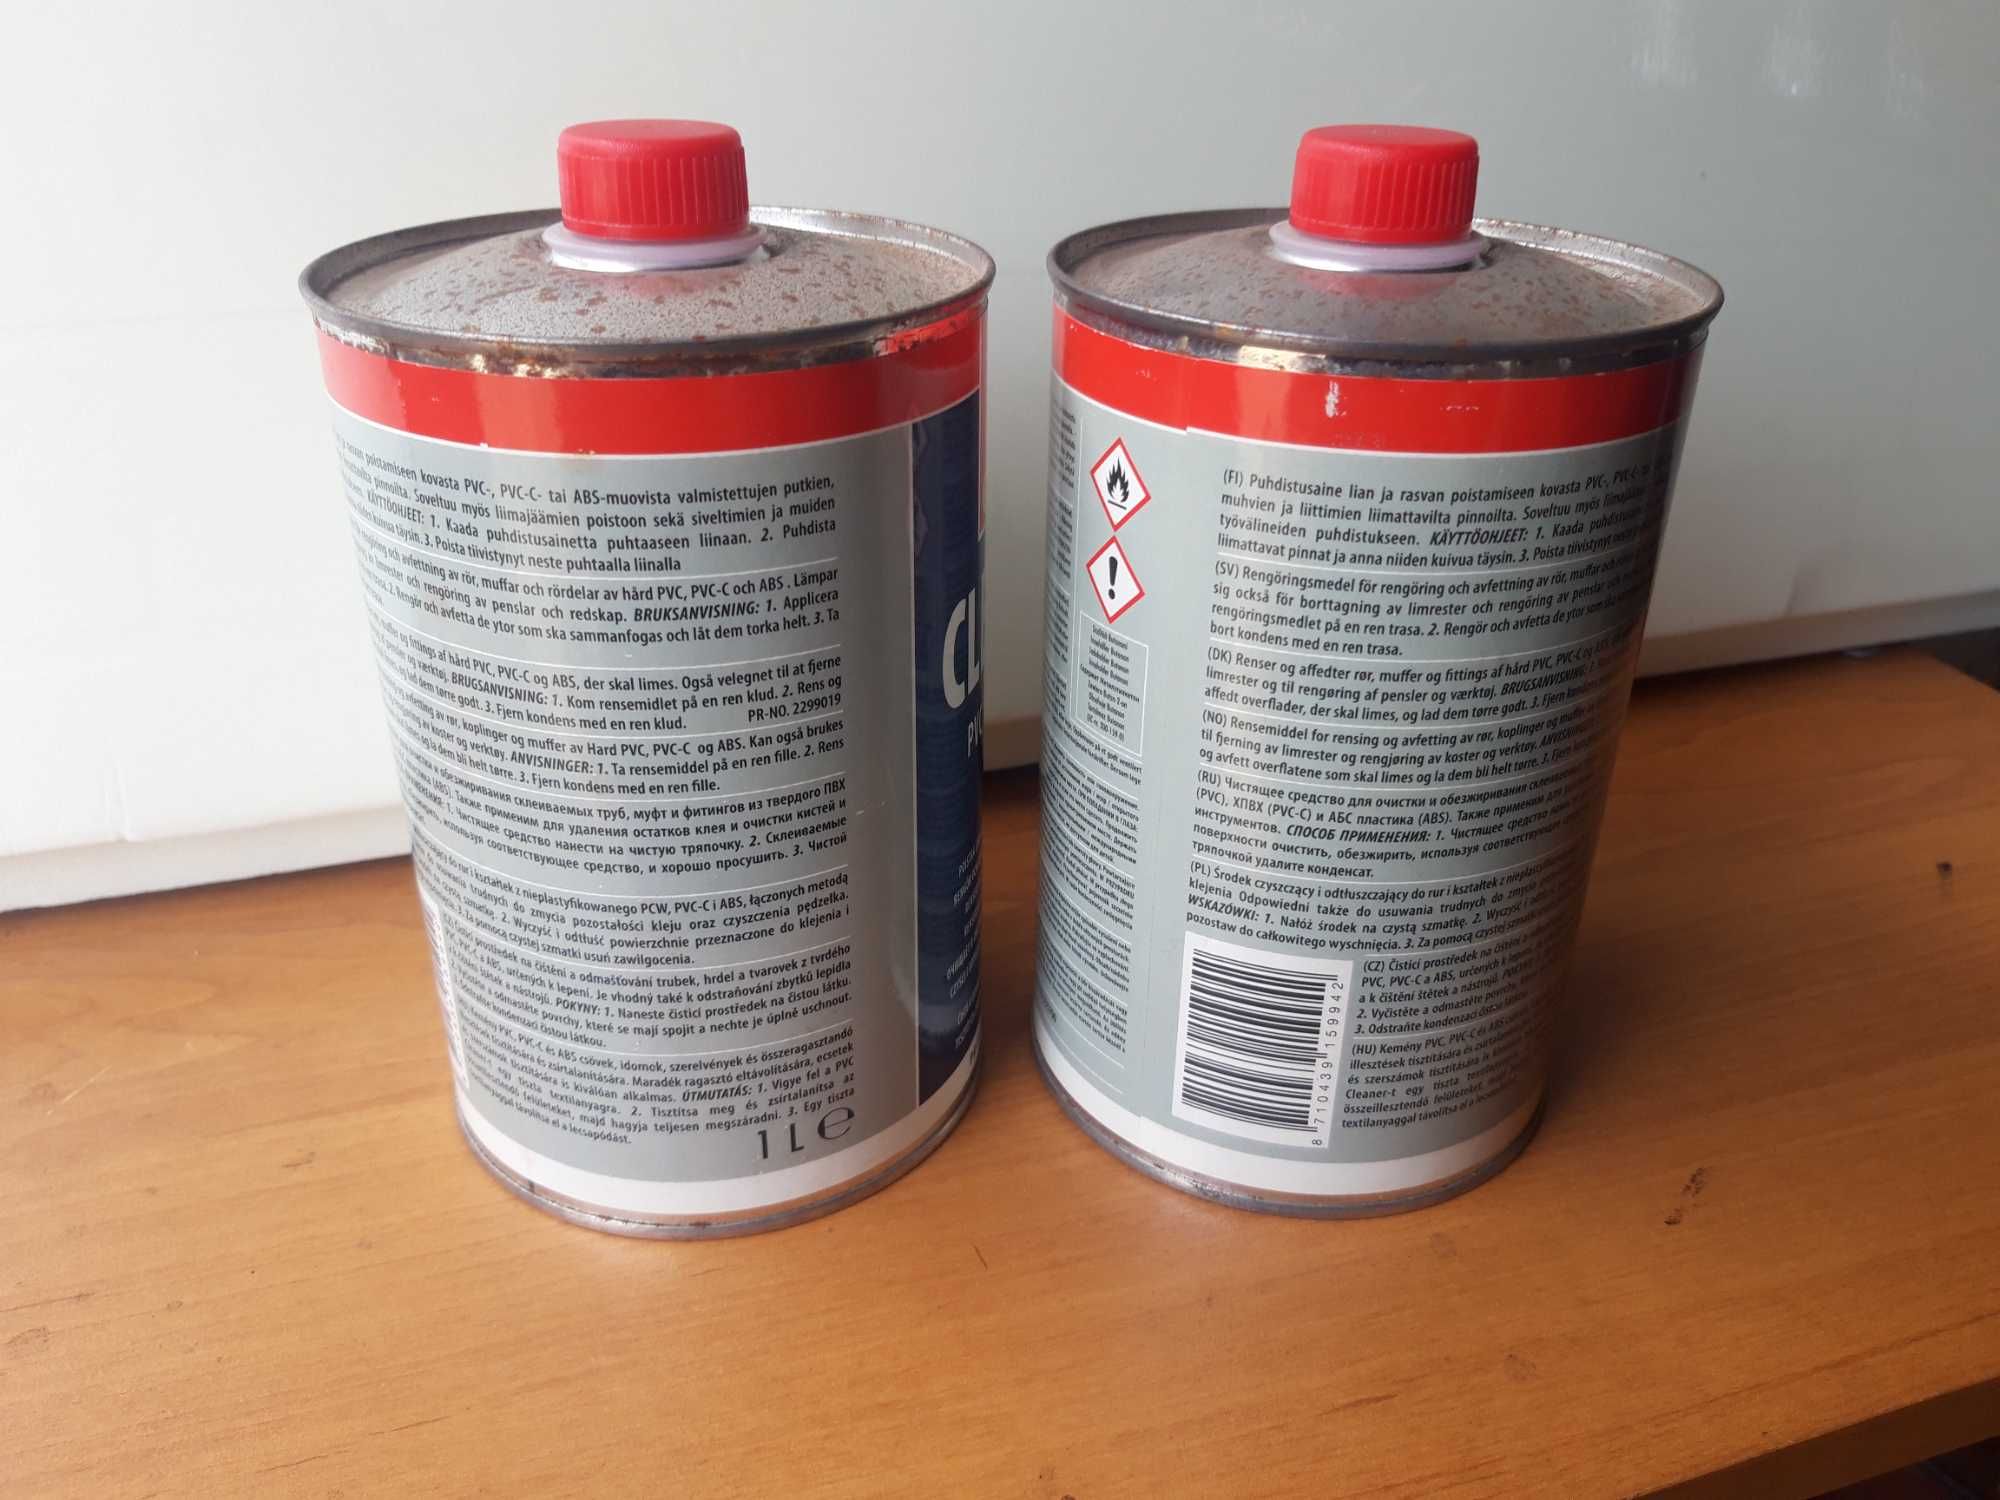 Środek czyszczący Griffon Cleaner do rur i kształtek PVC,PVC-C,ABS 1l